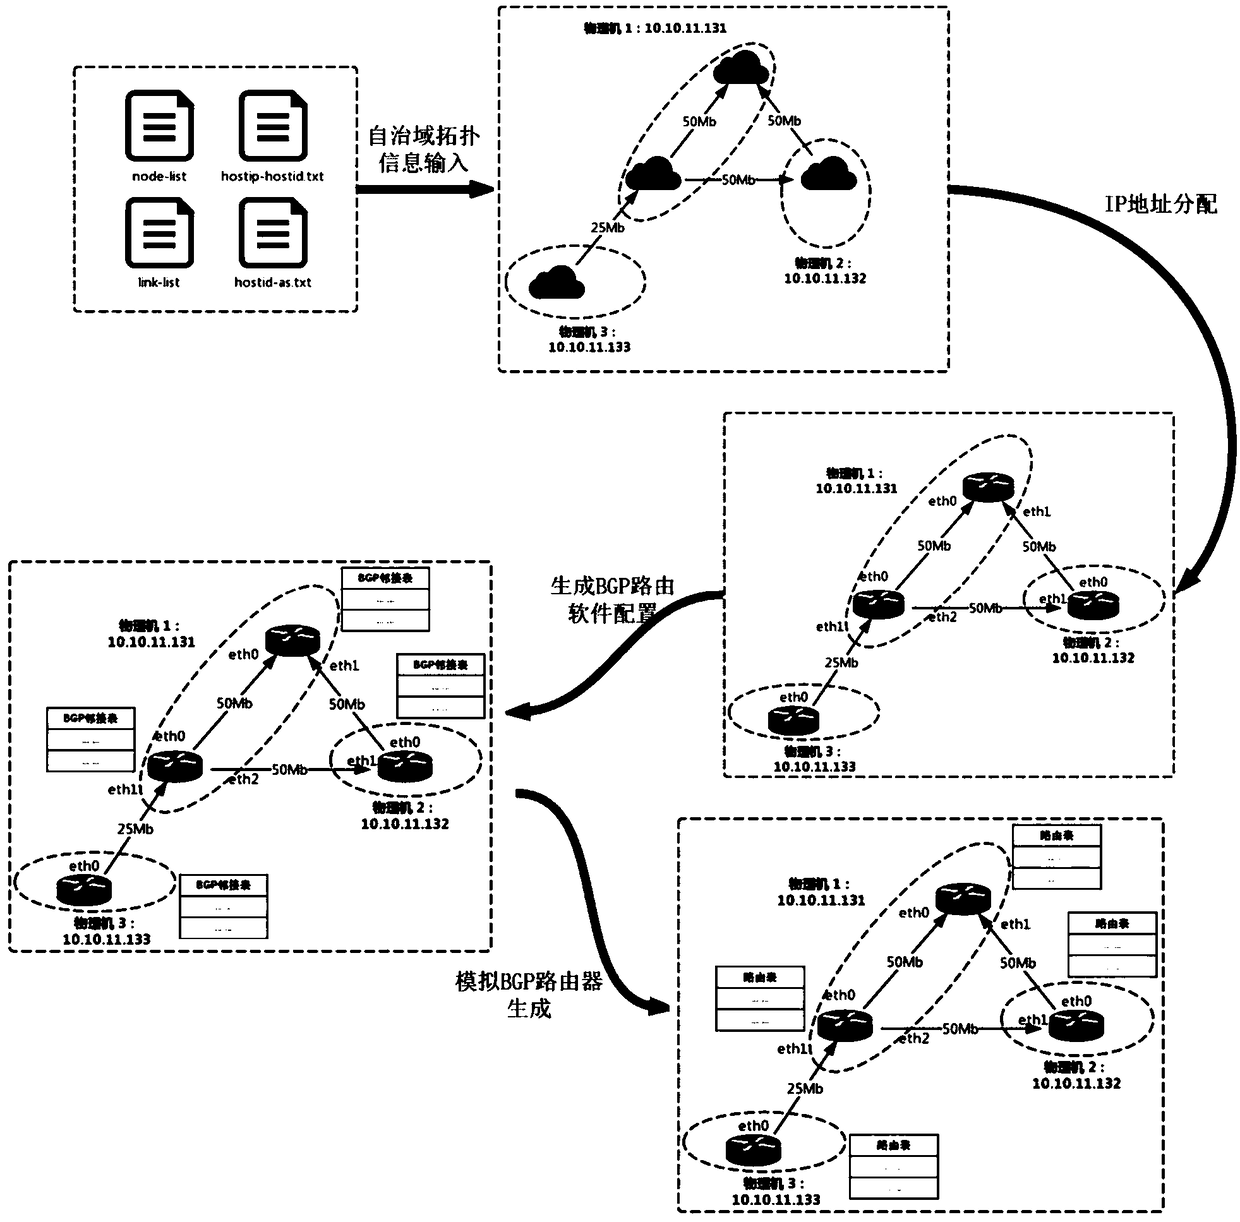 Autonomous-domain-level network simulation method based on virtualization technology